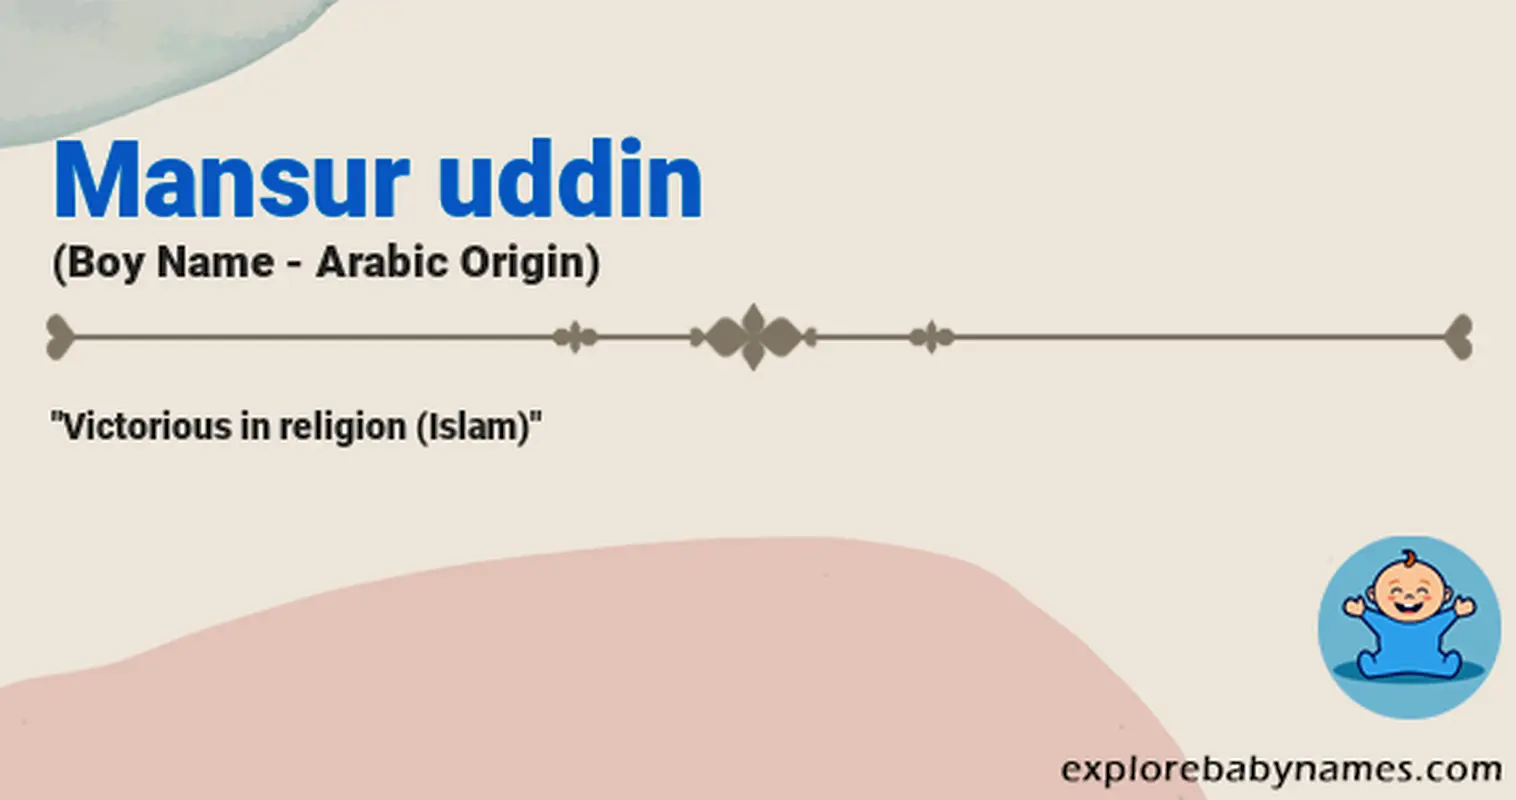 Meaning of Mansur uddin